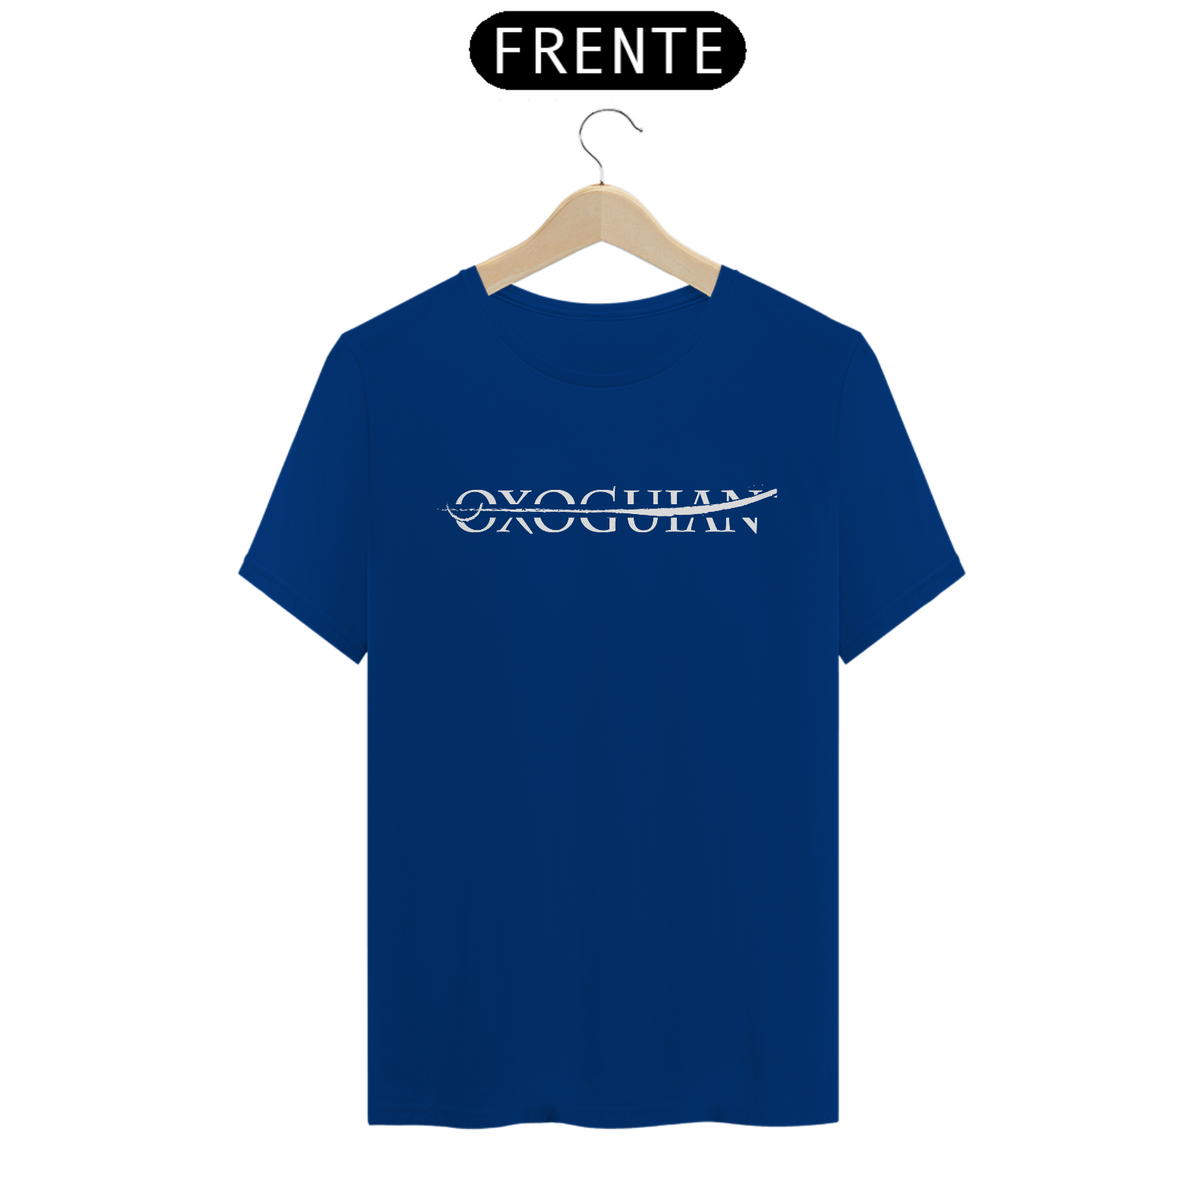 Nome do produto: T-Shirt Classic - Okan Oxoguian